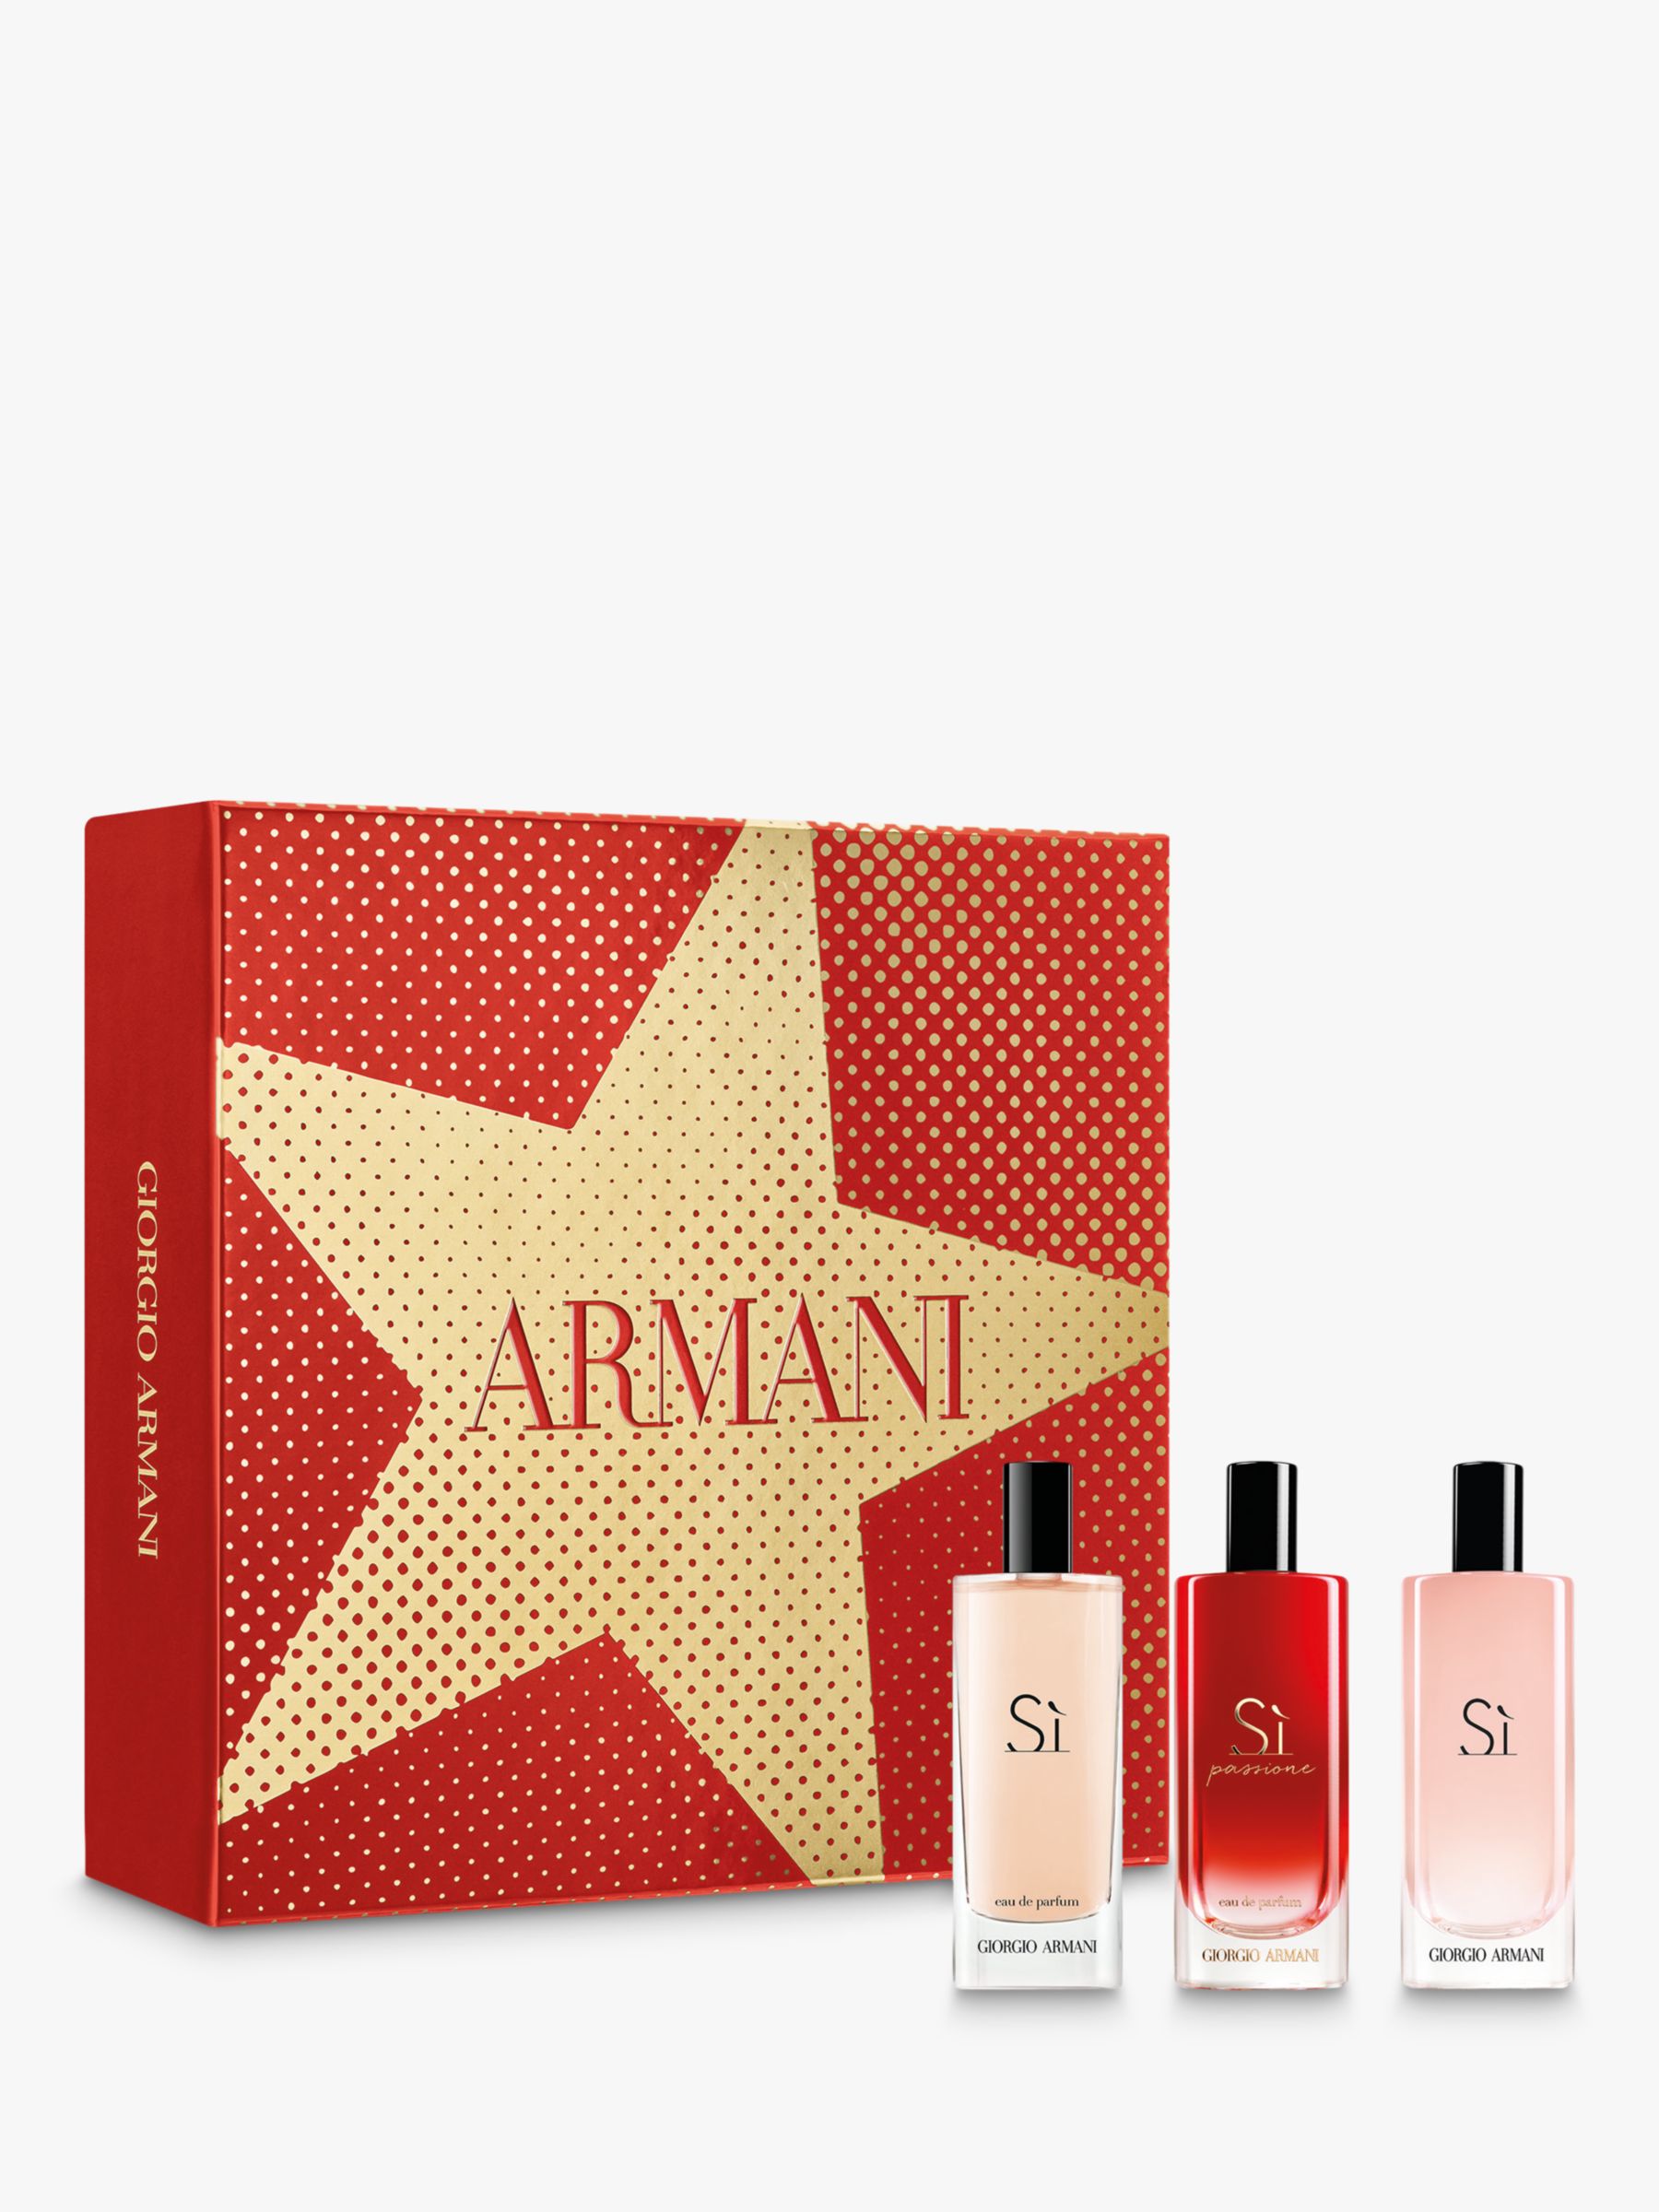 giorgio armani women's perfume gift set